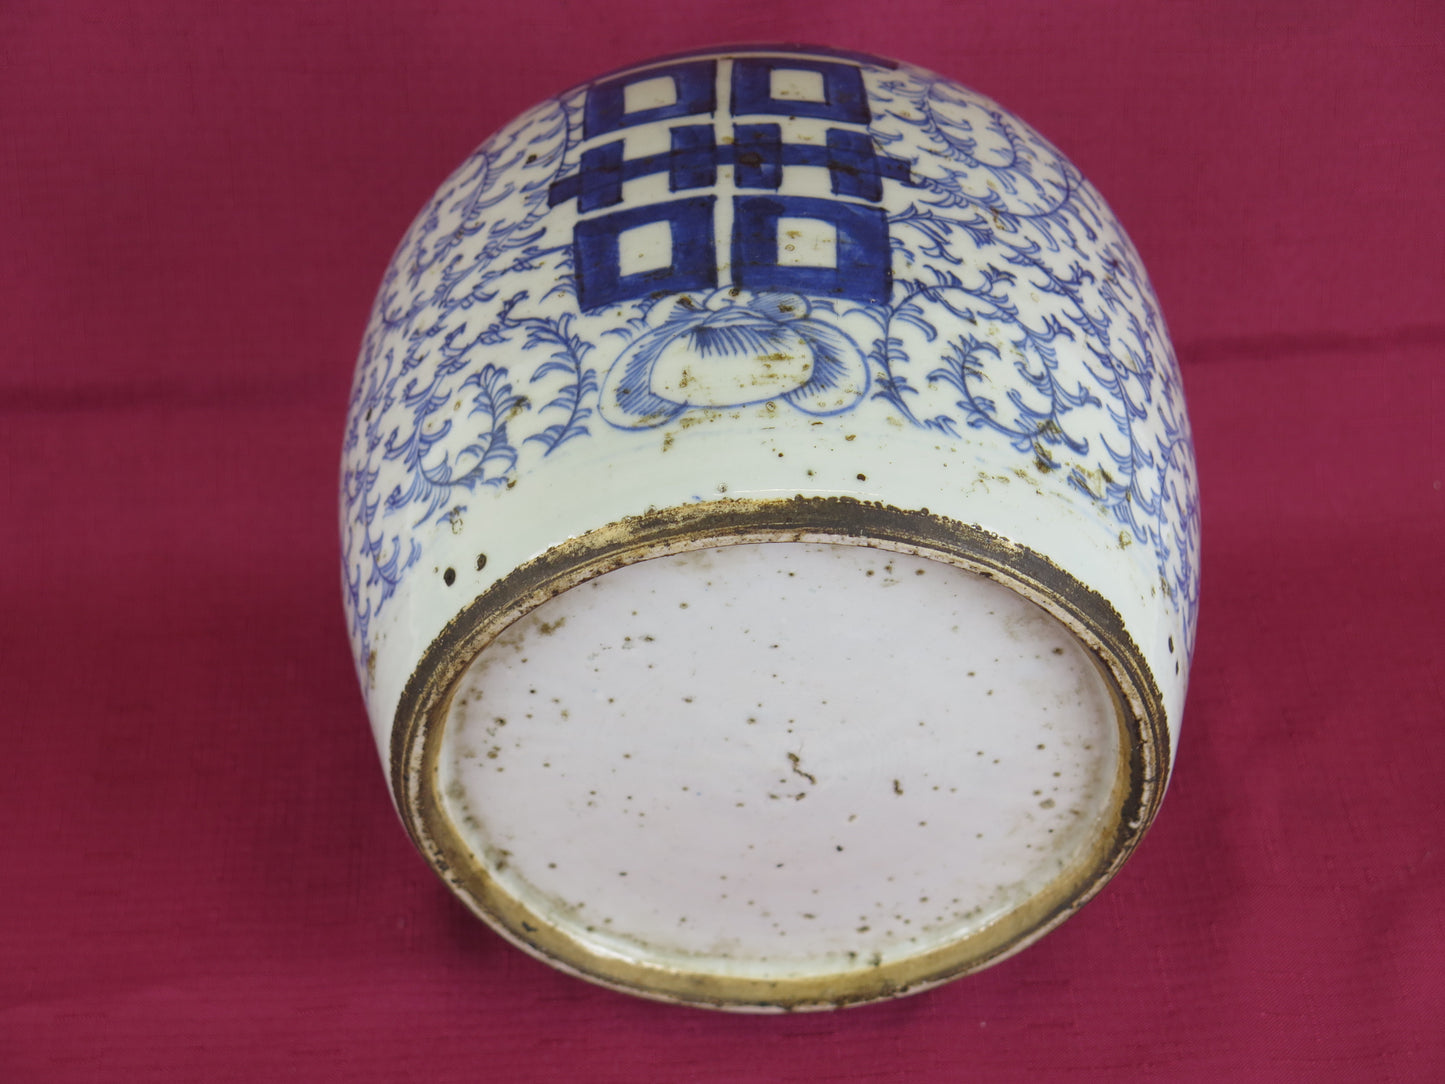 Vaso antico cina ceramica bianco blu collezione felicita' cinese matrimonio Cina CM2